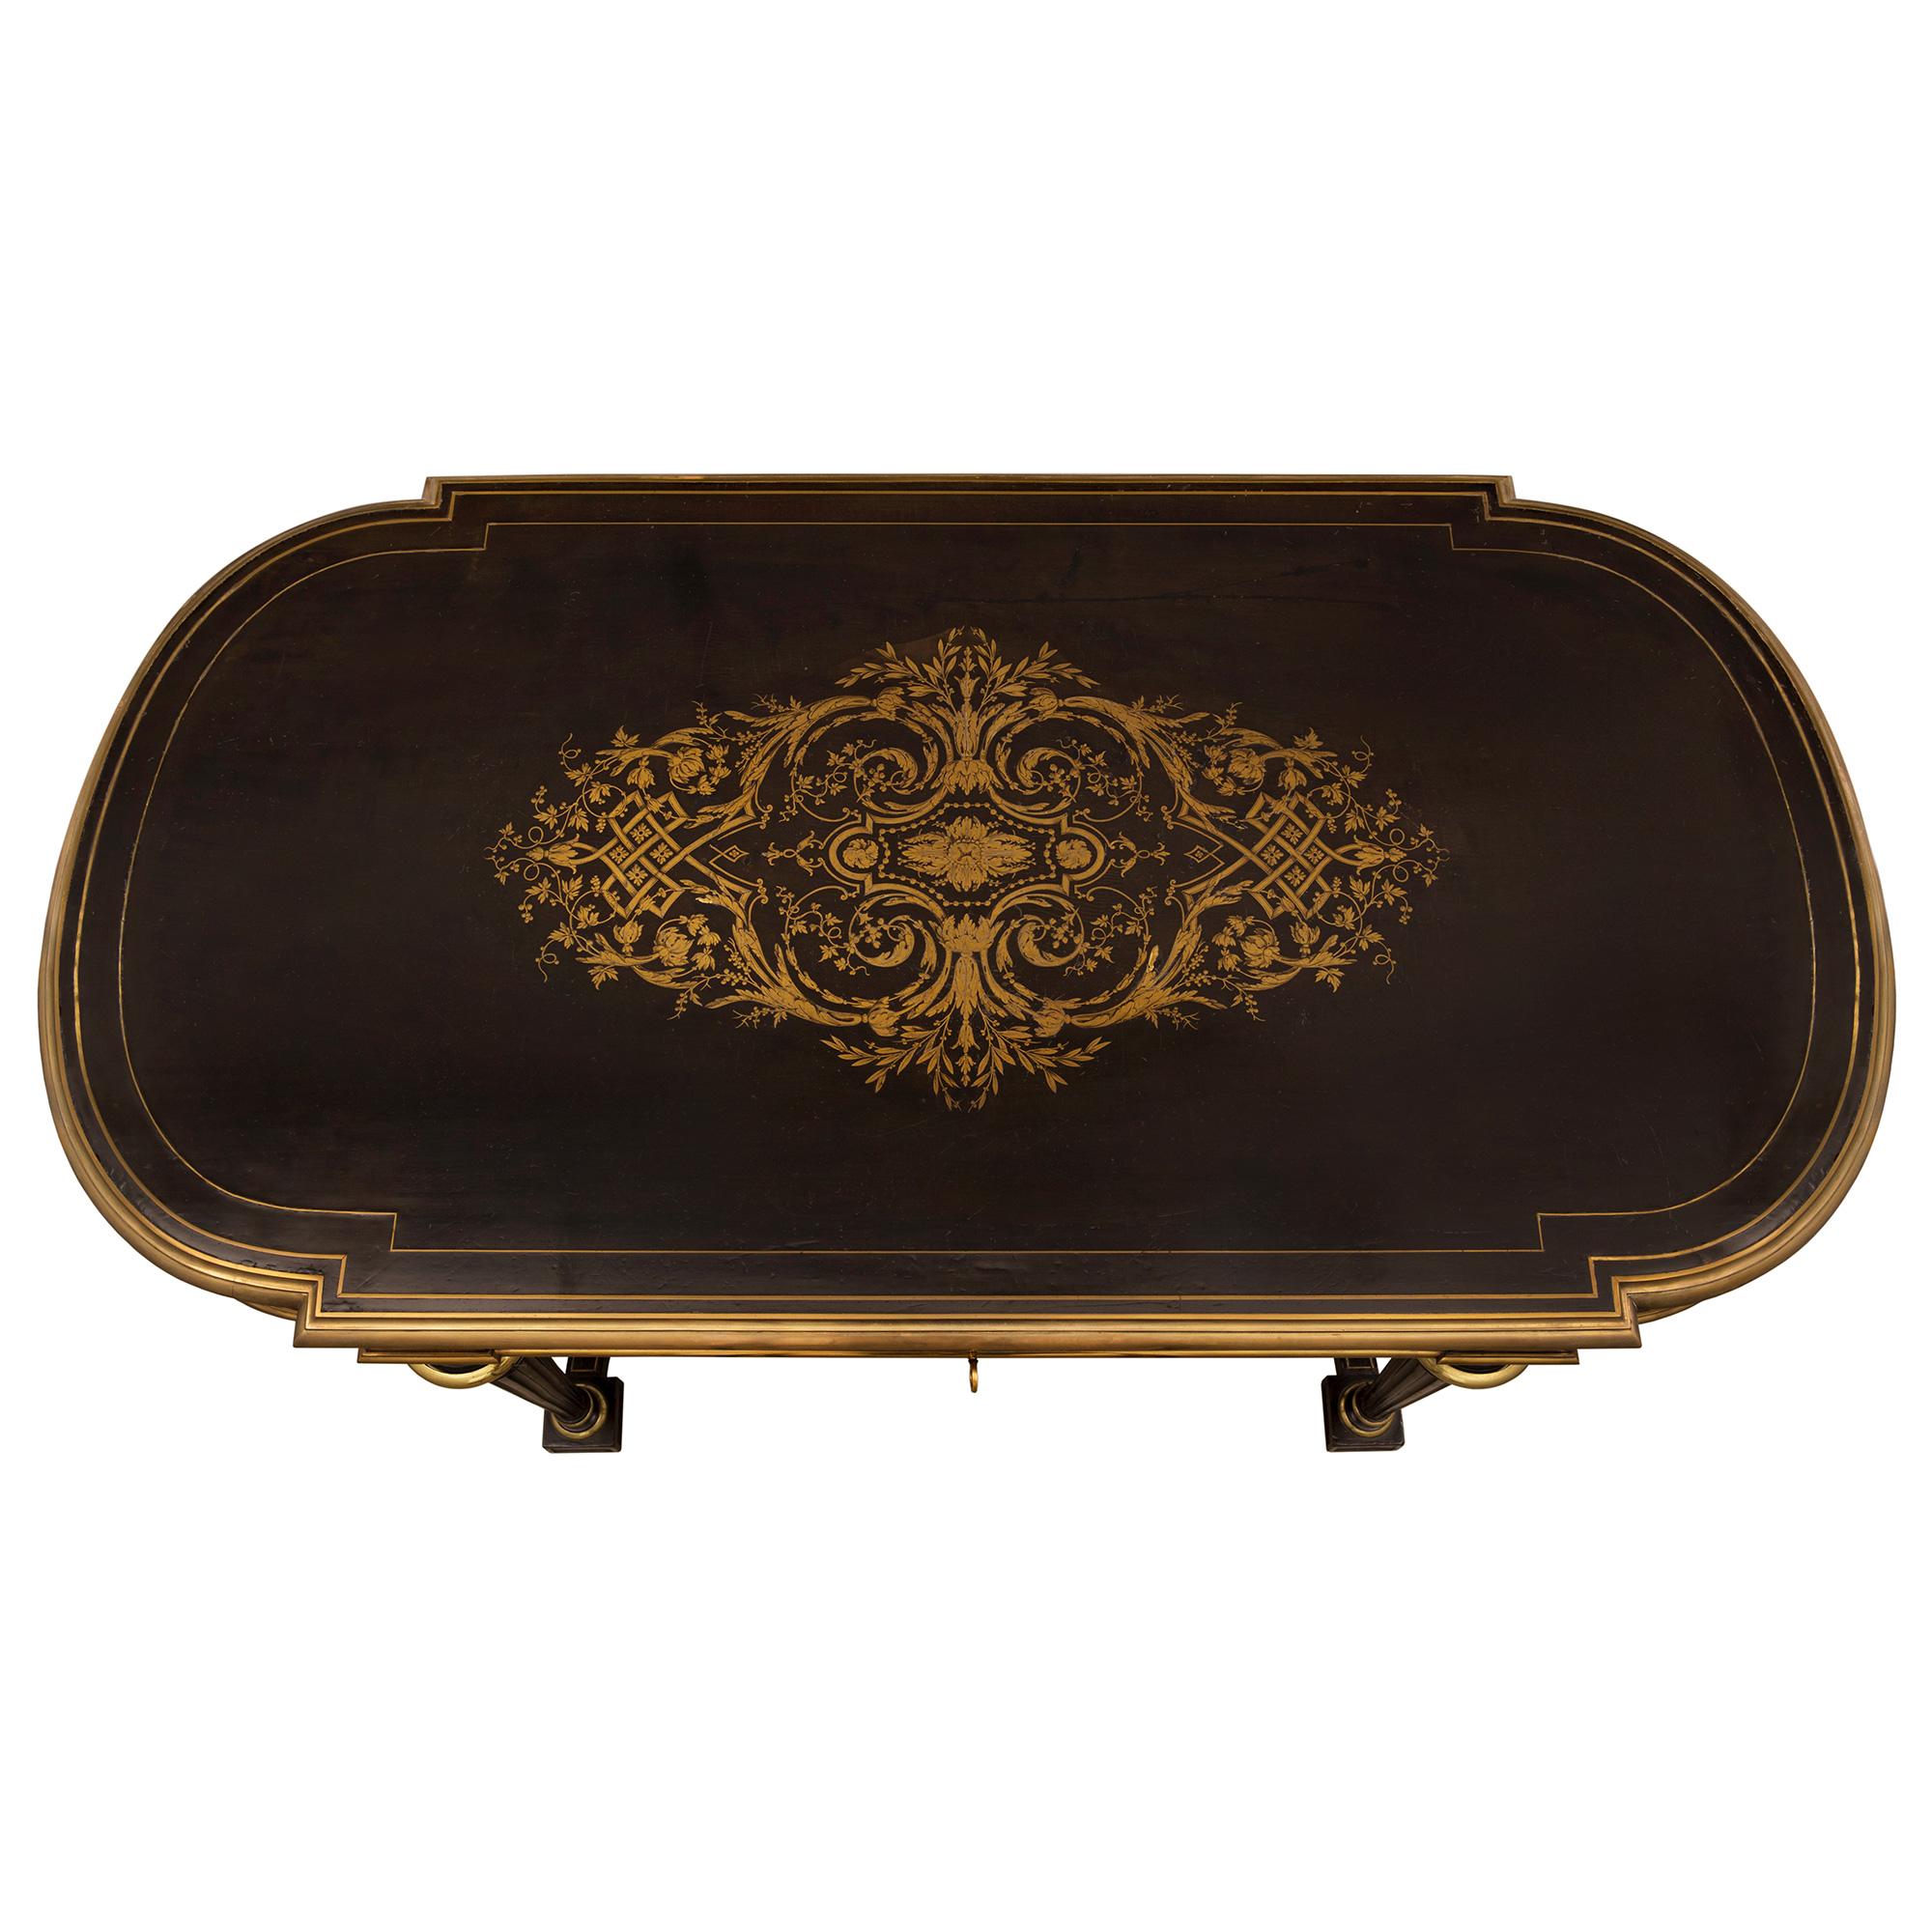 Ein außergewöhnlicher französischer Schreibtisch mit Intarsien aus Ebenholz und Messing aus der Zeit Napoleons III. des 19. Der ovale Schreibtisch steht auf eleganten, schlanken, kreisförmig verjüngten, kannelierten Beinen mit feinen, ormolierten